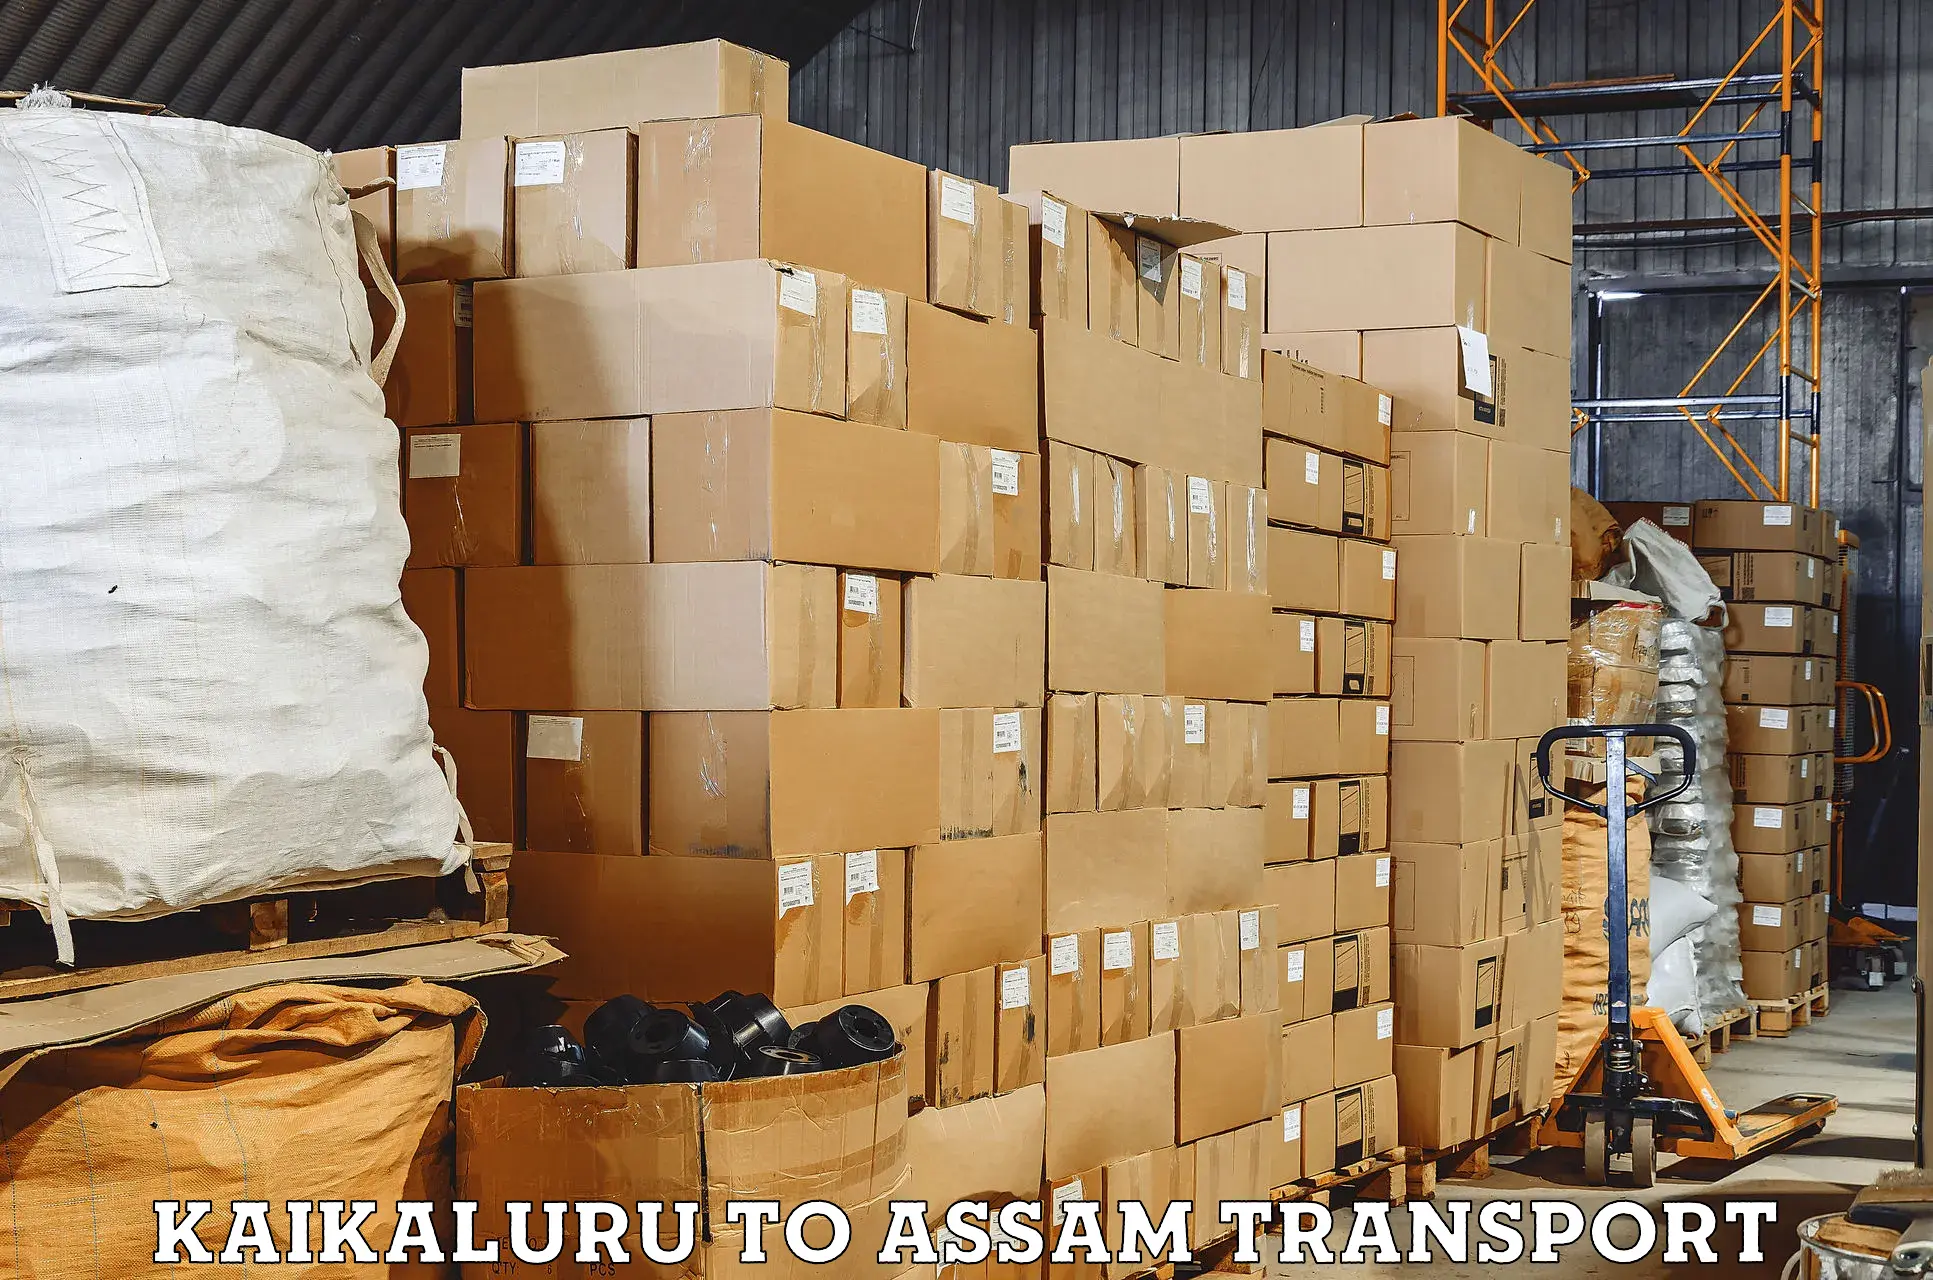 Transport bike from one state to another Kaikaluru to Nalbari